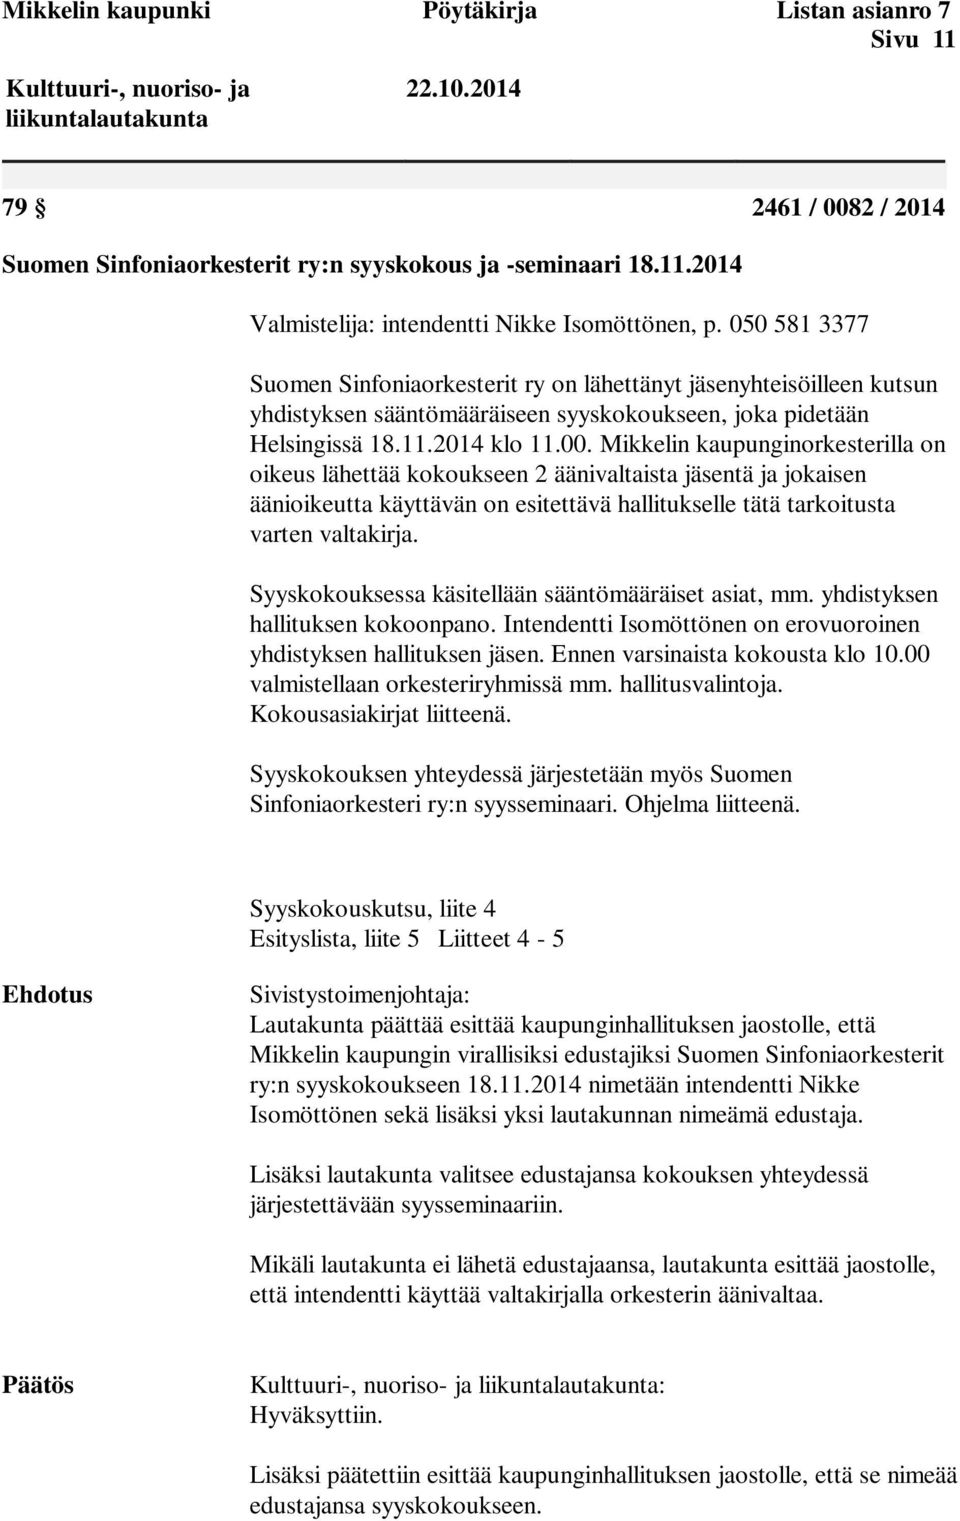 Mikkelin kaupunginorkesterilla on oikeus lähettää kokoukseen 2 äänivaltaista jäsentä ja jokaisen äänioikeutta käyttävän on esitettävä hallitukselle tätä tarkoitusta varten valtakirja.